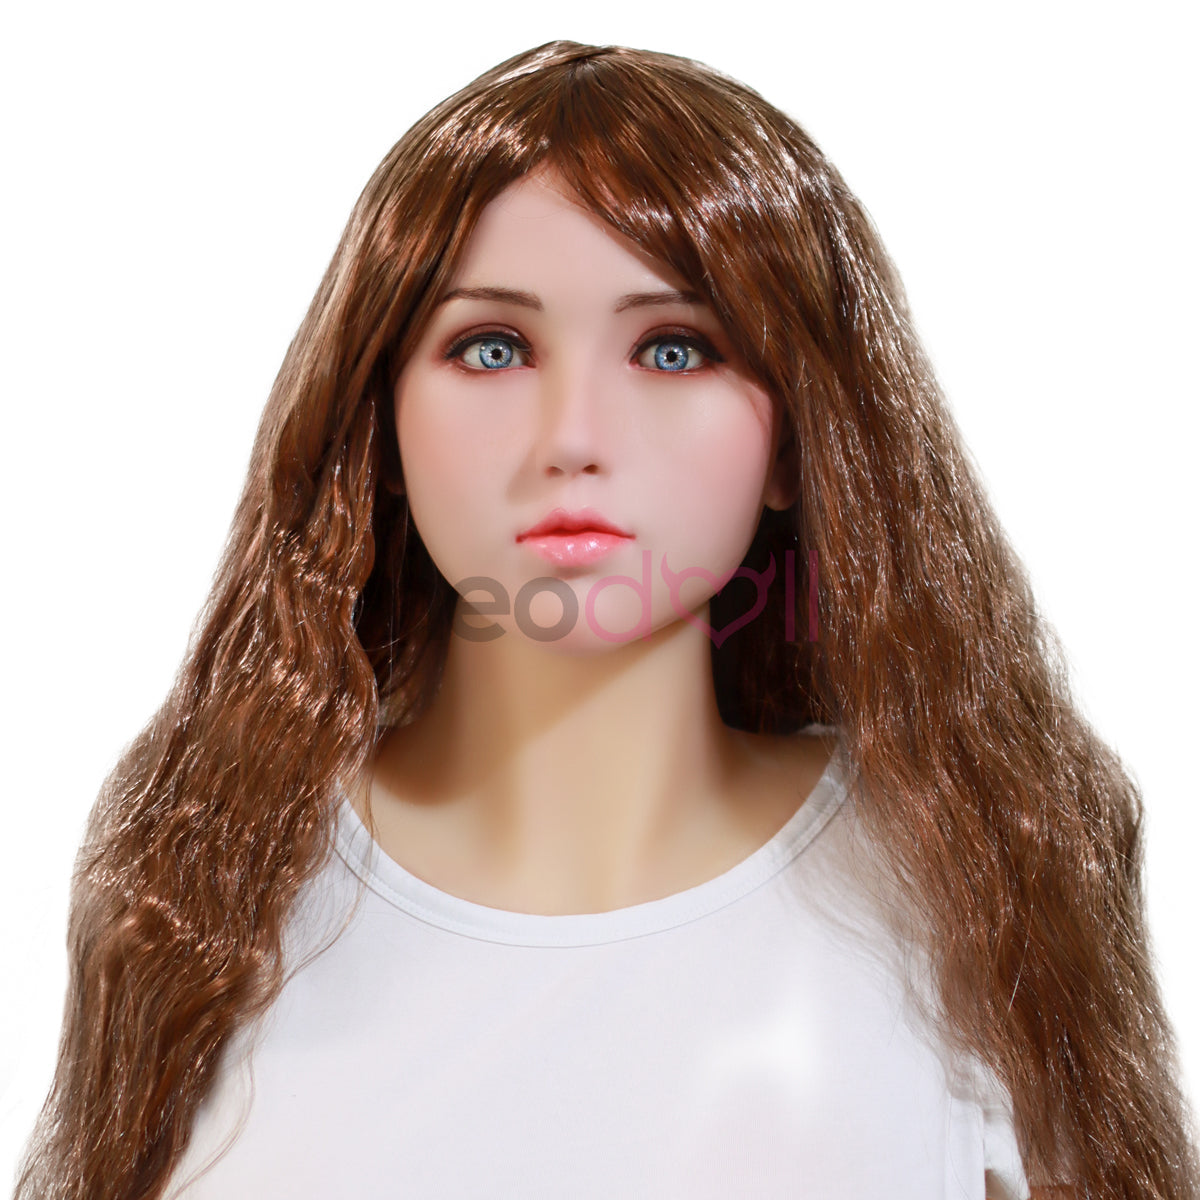 Neodoll Hair Wigs - Brown - Long Wavy